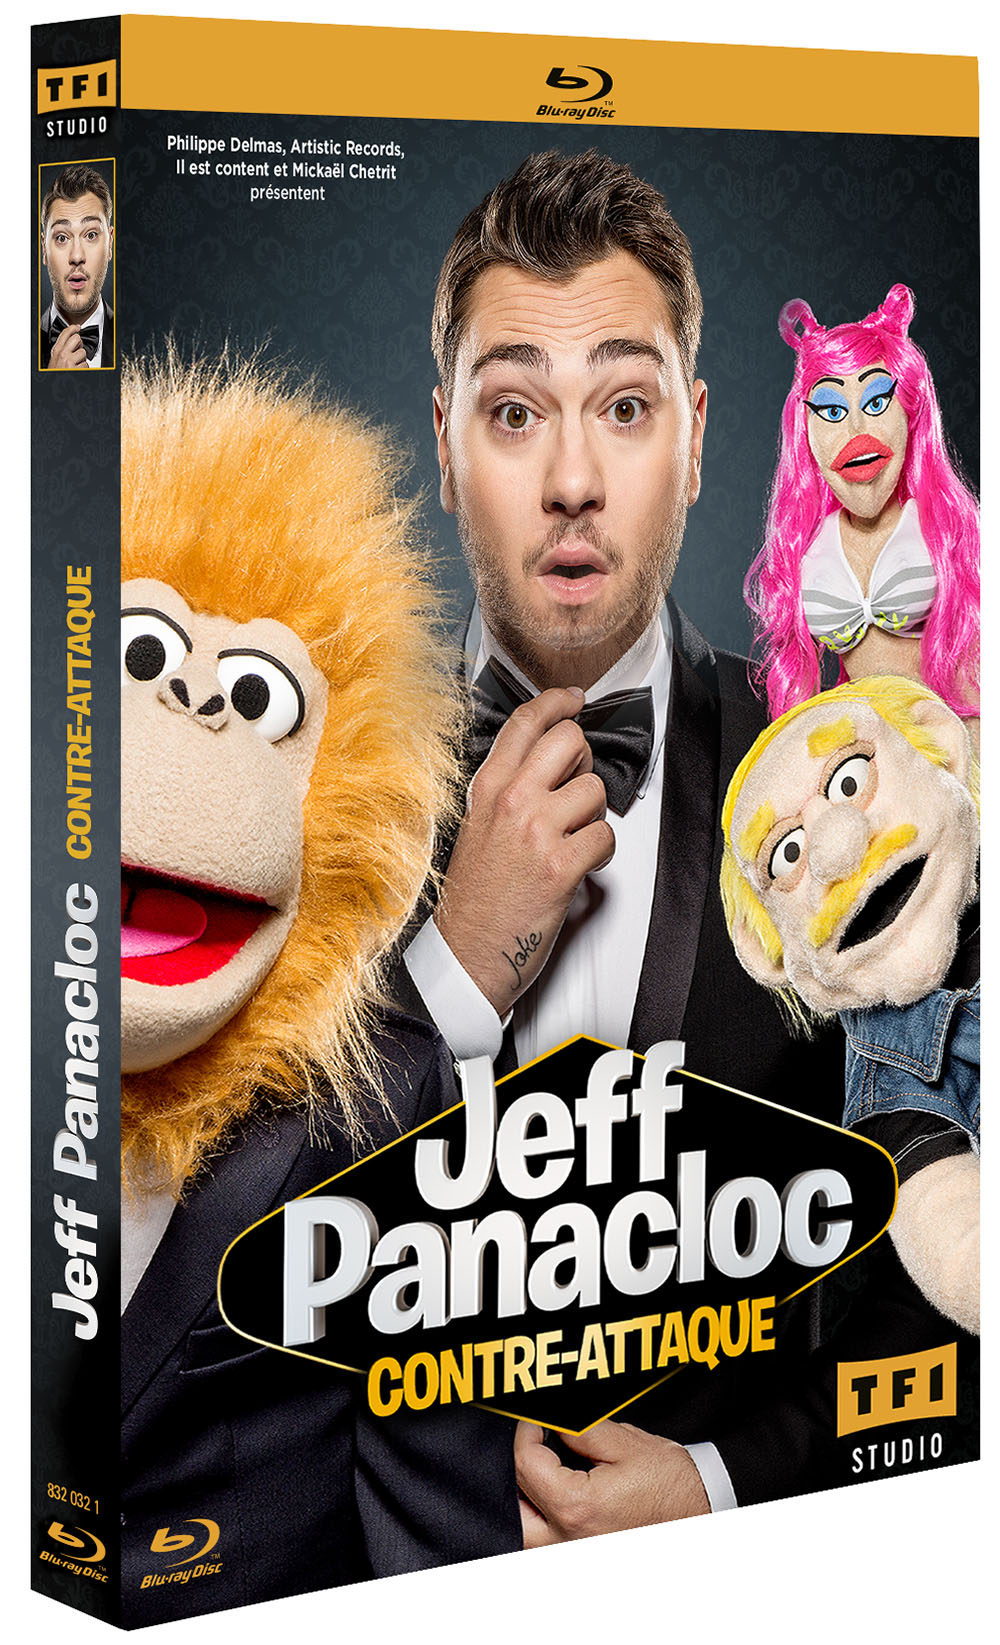 Le ventriloque Jeff Panacloc au Zénith pour un show décapant